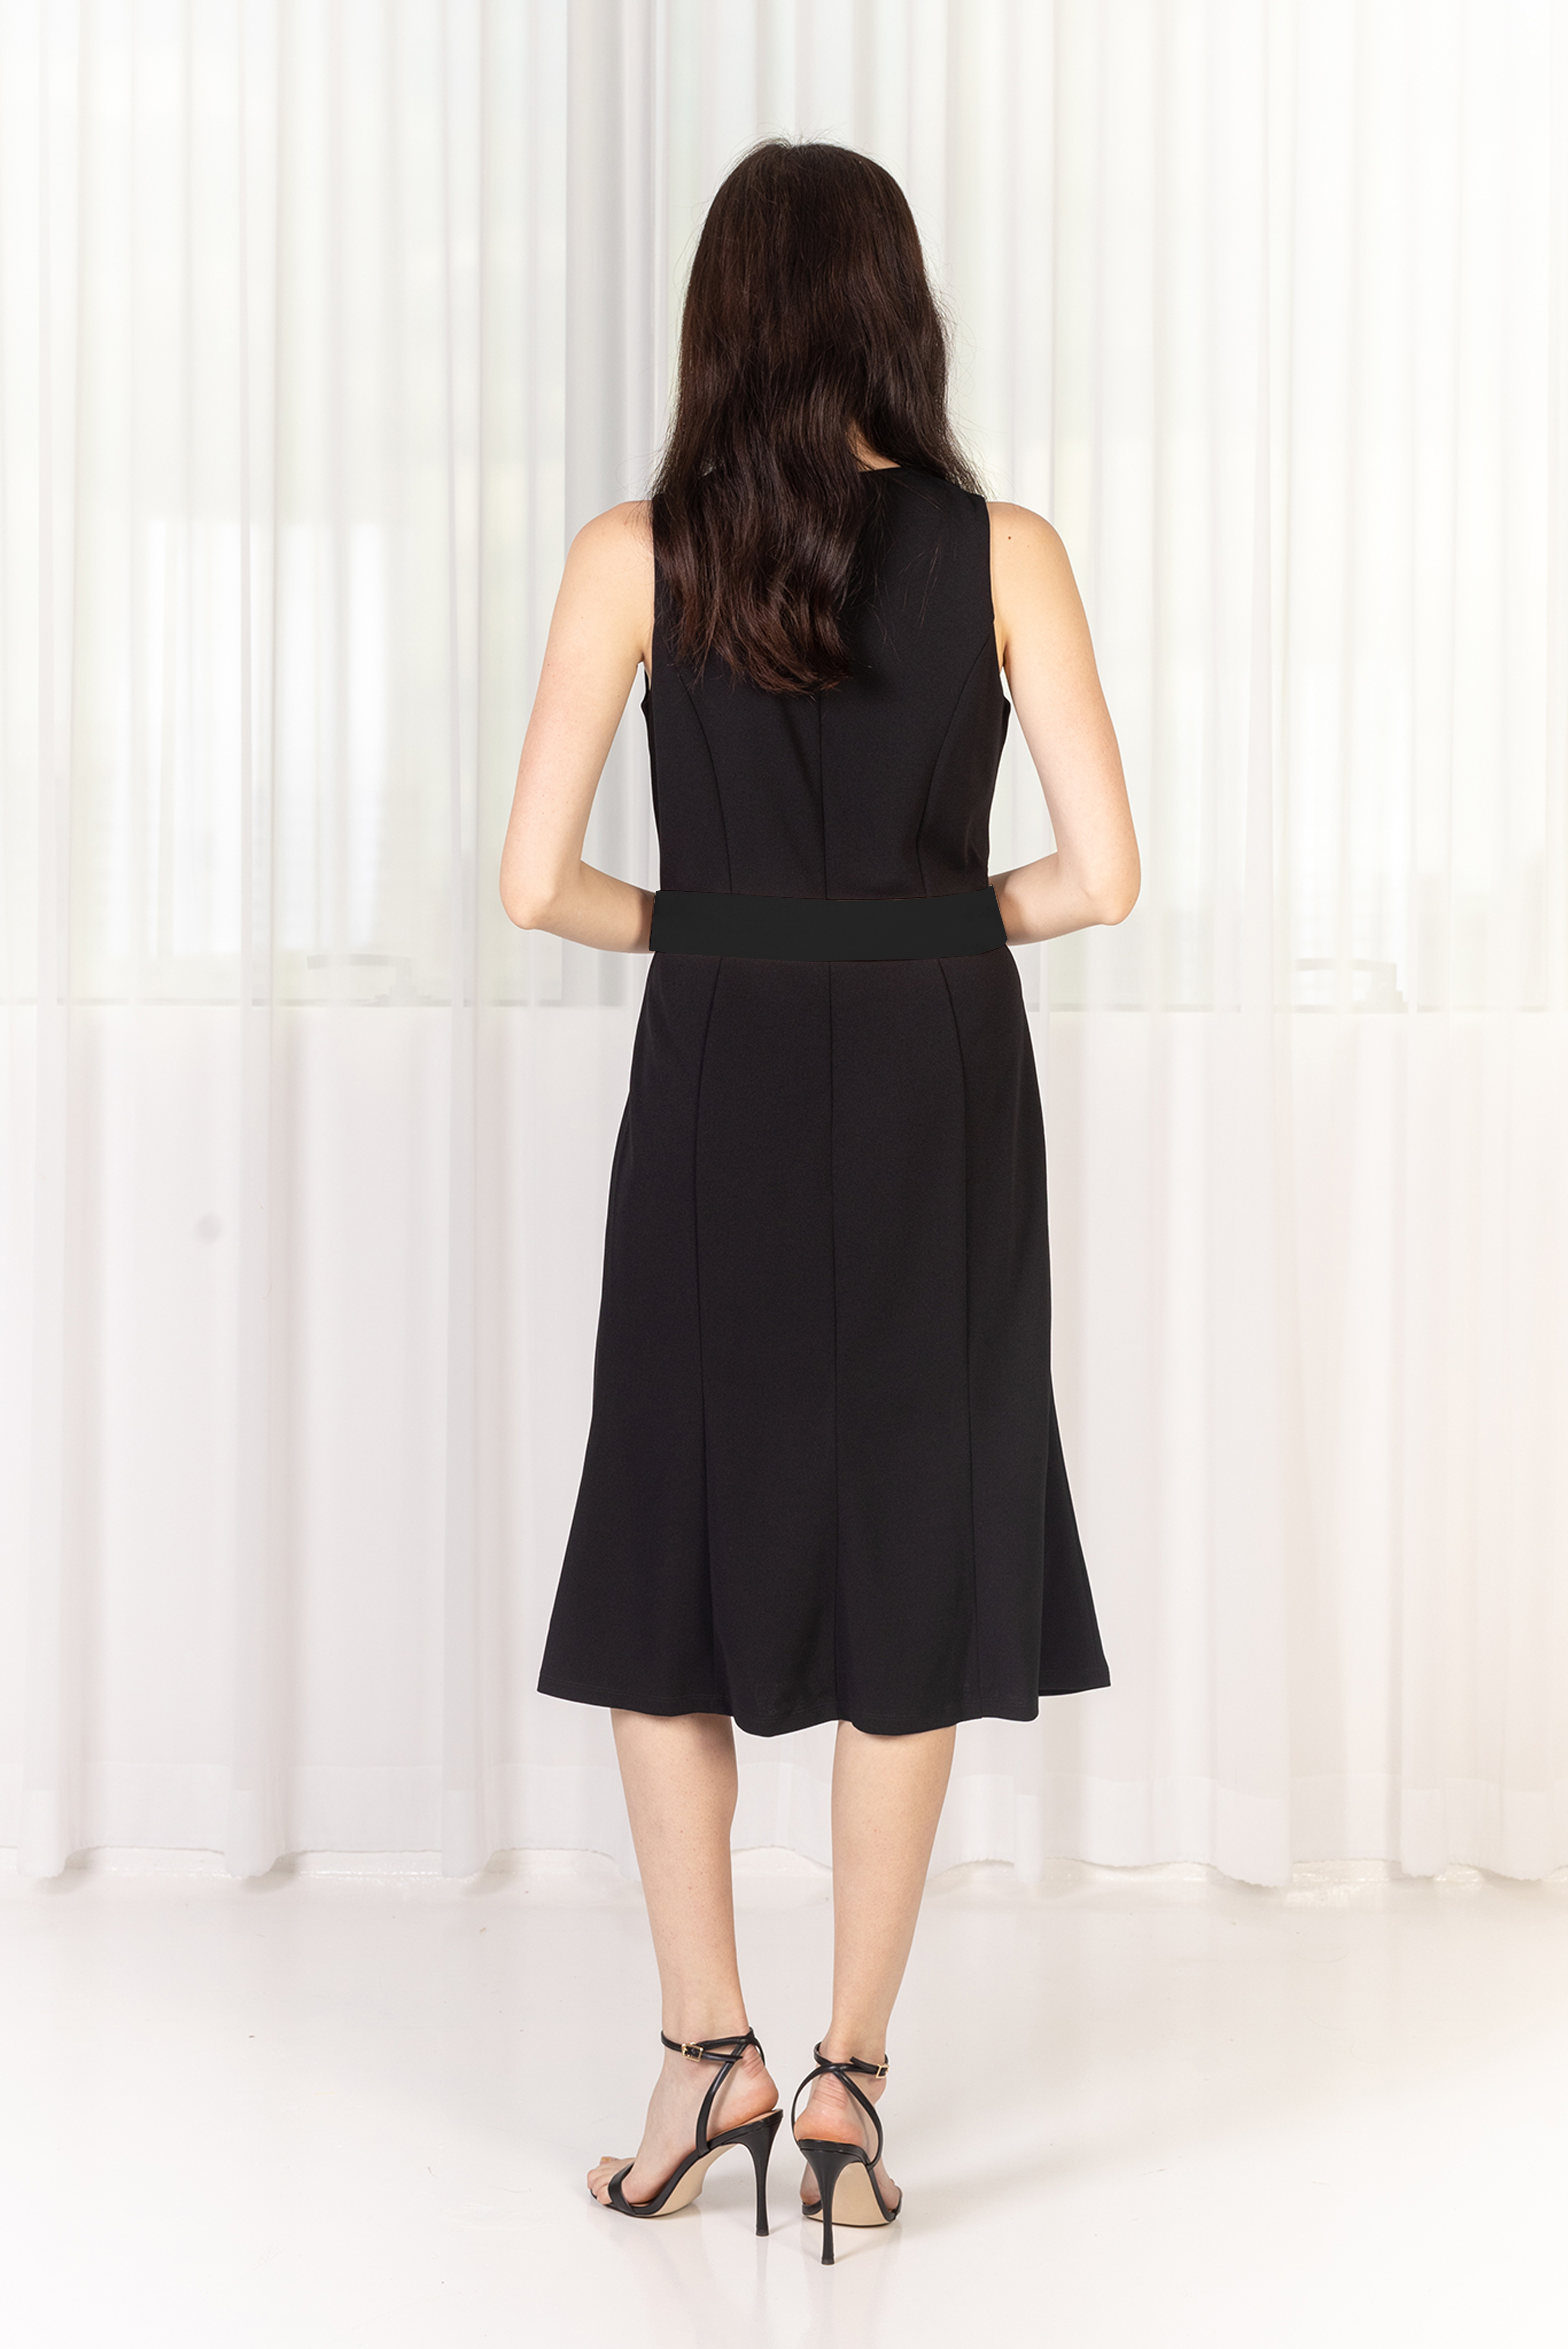 DEVYN Straight Cut Dress (Black)